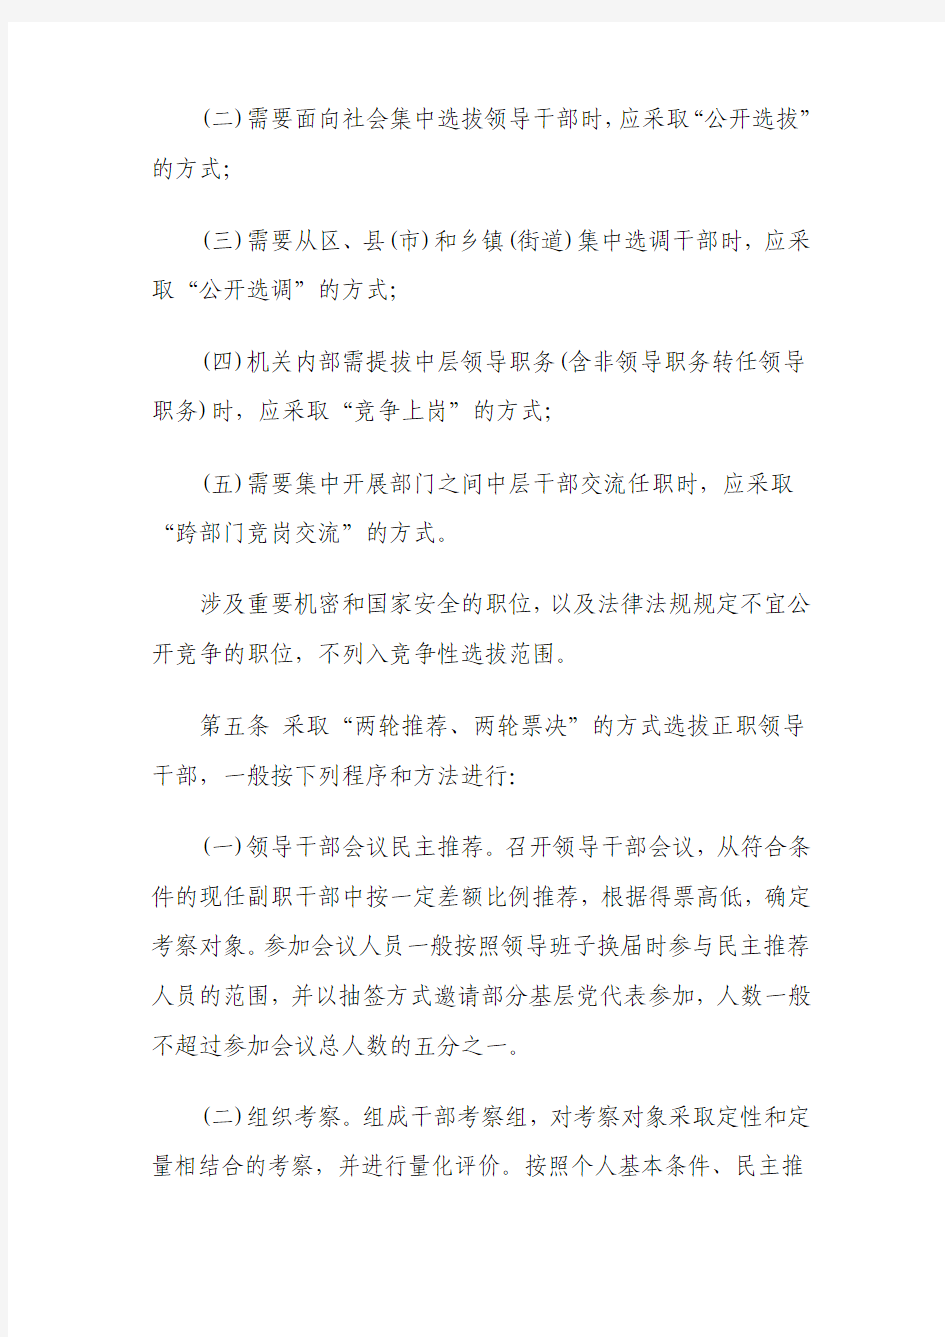 杭州市竞争性选拔干部工作实施办法(试行)